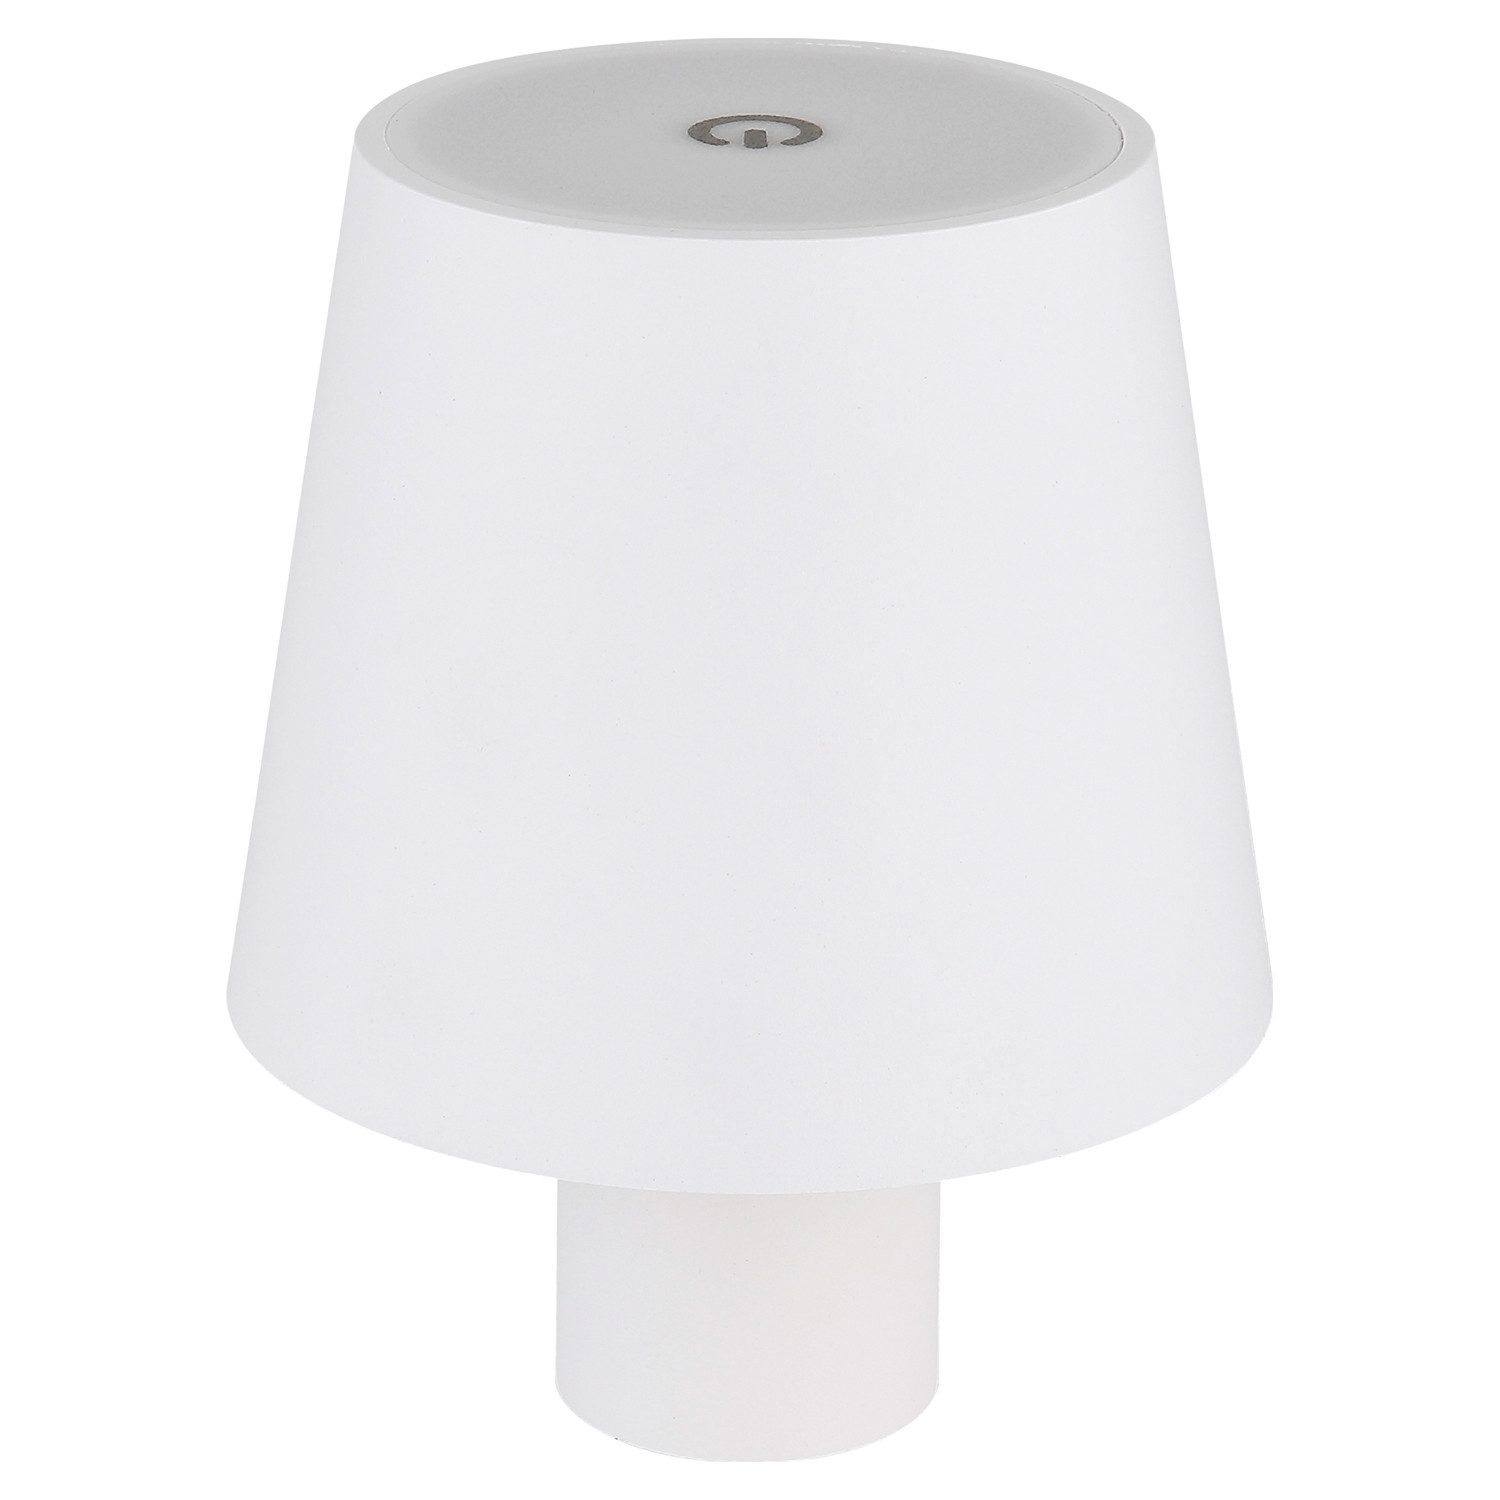 Globo Lampenschirm VANNIE, H 13 cm, Weiß, Metall, Touchsensor, USB-Port, Dimmbar, aufsteckbar auf Glasflaschenköpfe